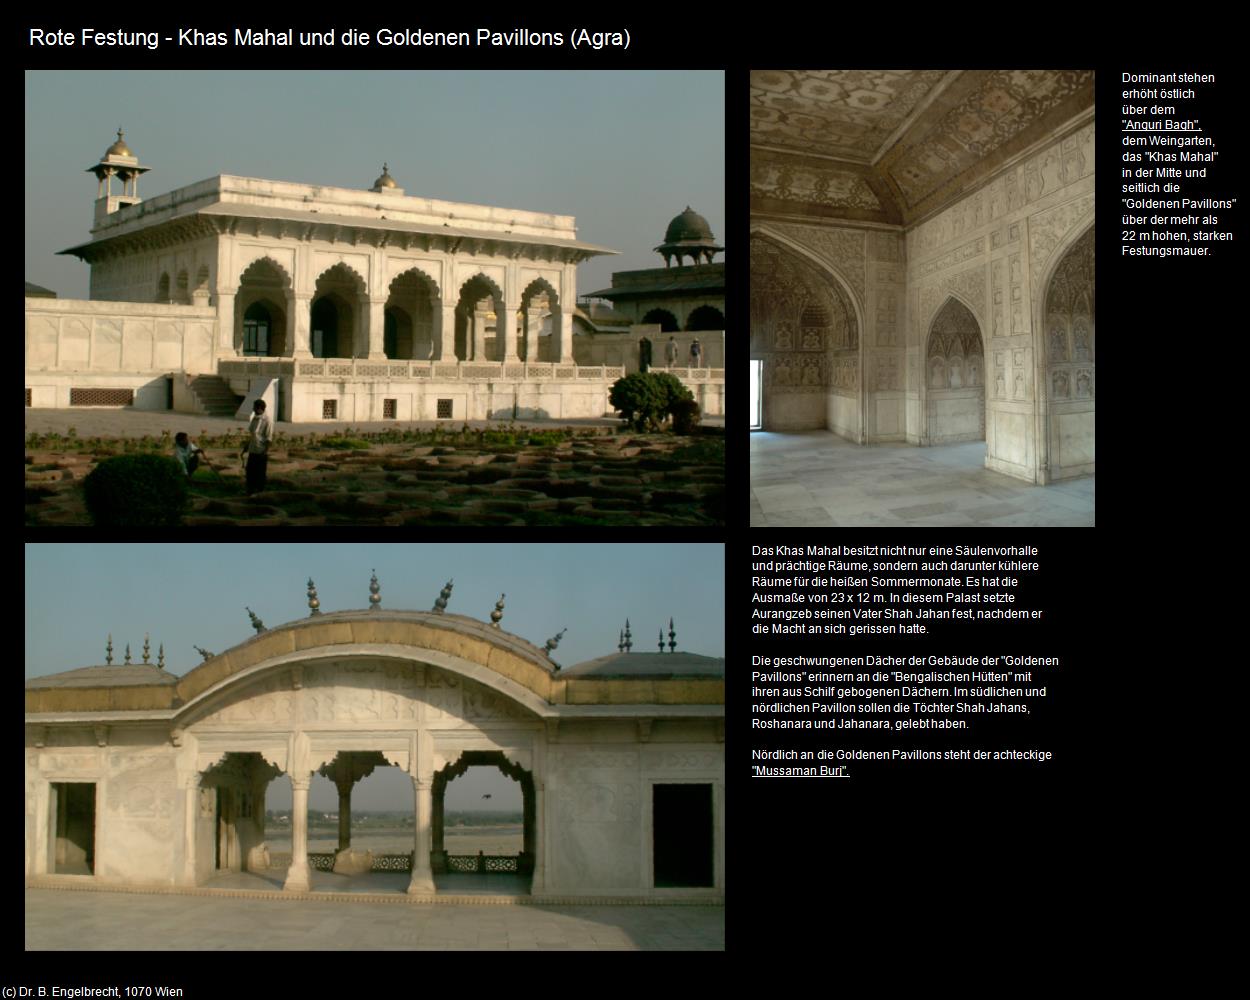 Rote Festung - Khas Mahal und die Goldenen Pavillions (Agra) in Rajasthan - das Land der Könige(c)B.Engelbrecht